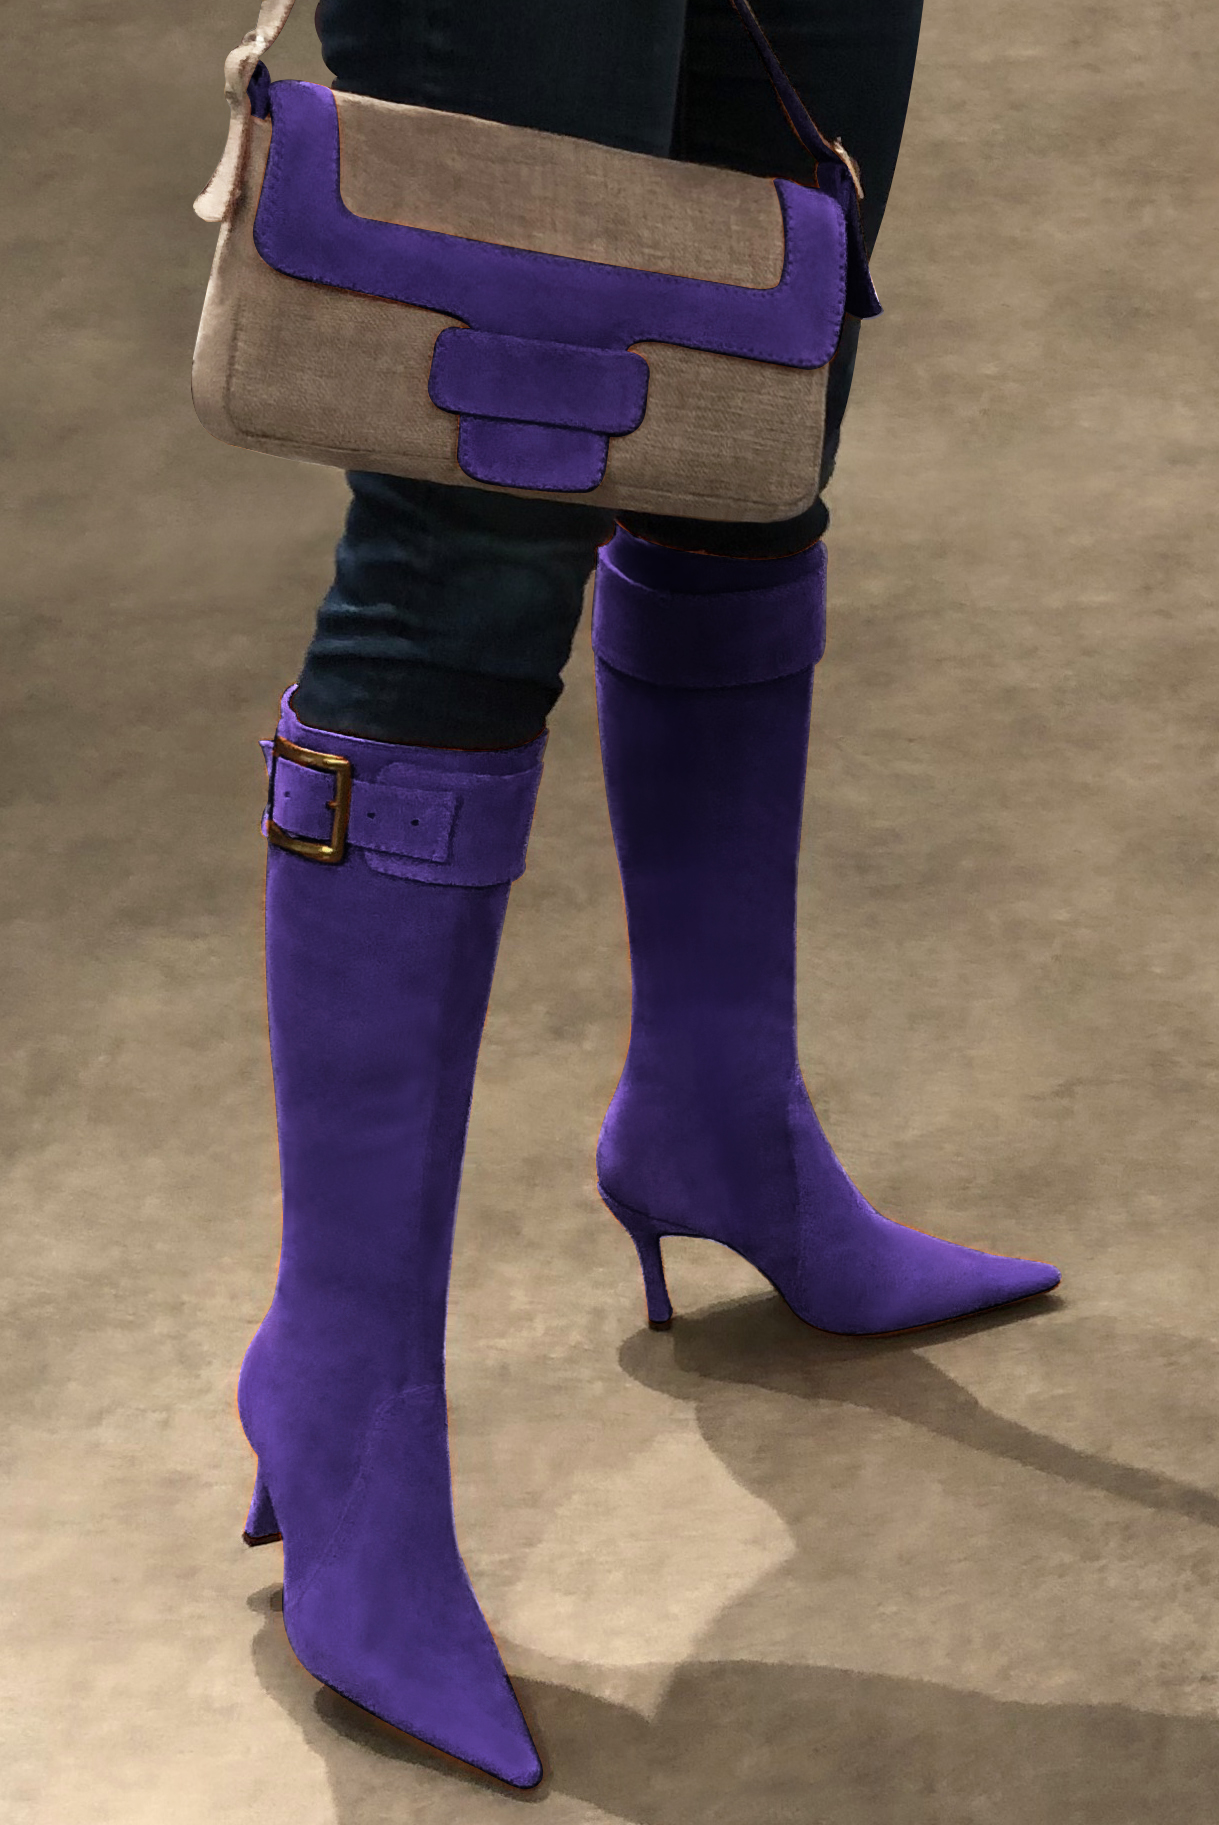 Tan beige and violet purple women's dress handbag, matching pumps and belts. Worn view - Florence KOOIJMAN